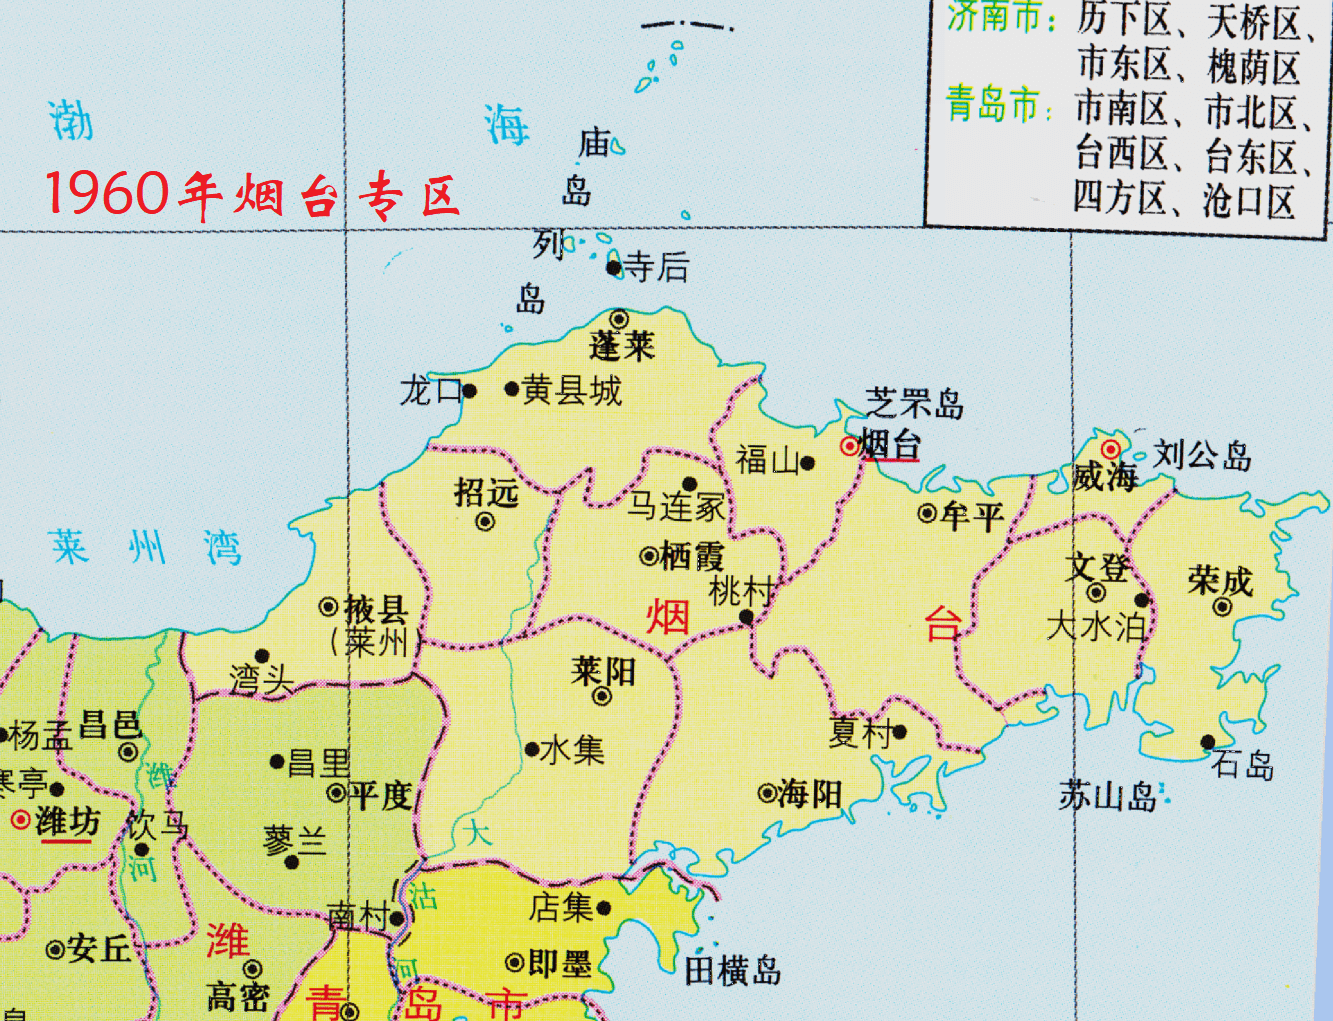 大的区划调整,胶东,渤海,鲁中南这三个战争时代形成的三大行政区撤销